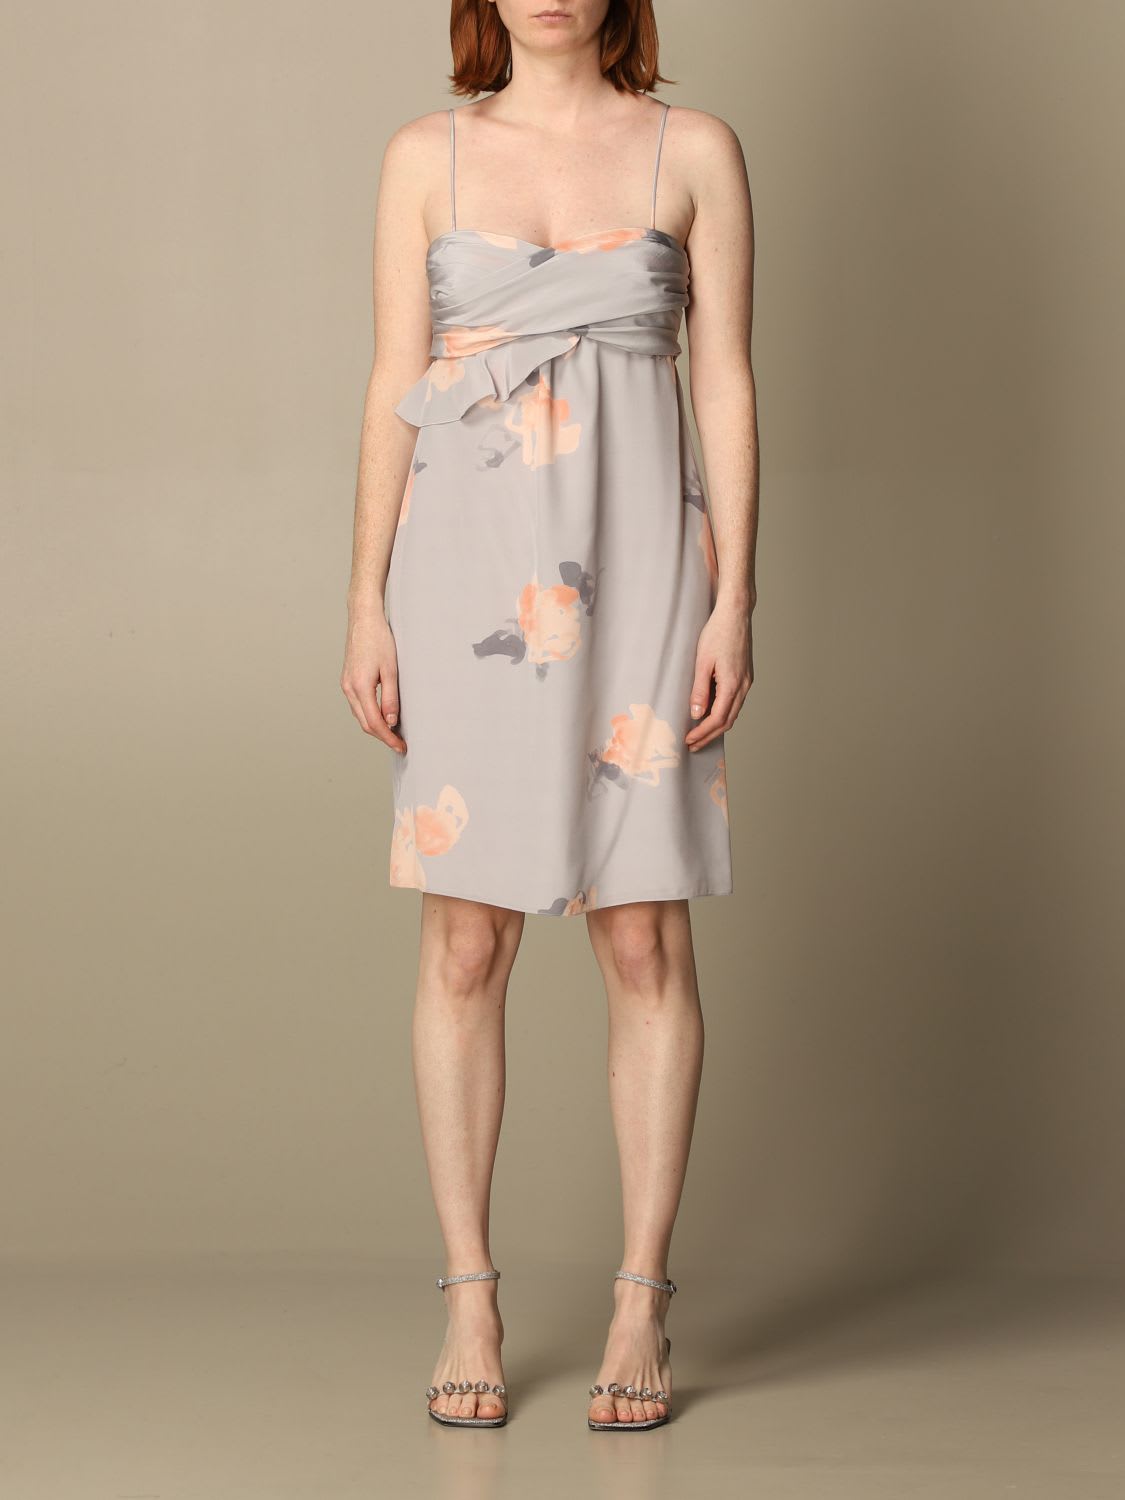 Emporio Armani Dress Emporio Armani Dress In Patterned Silk